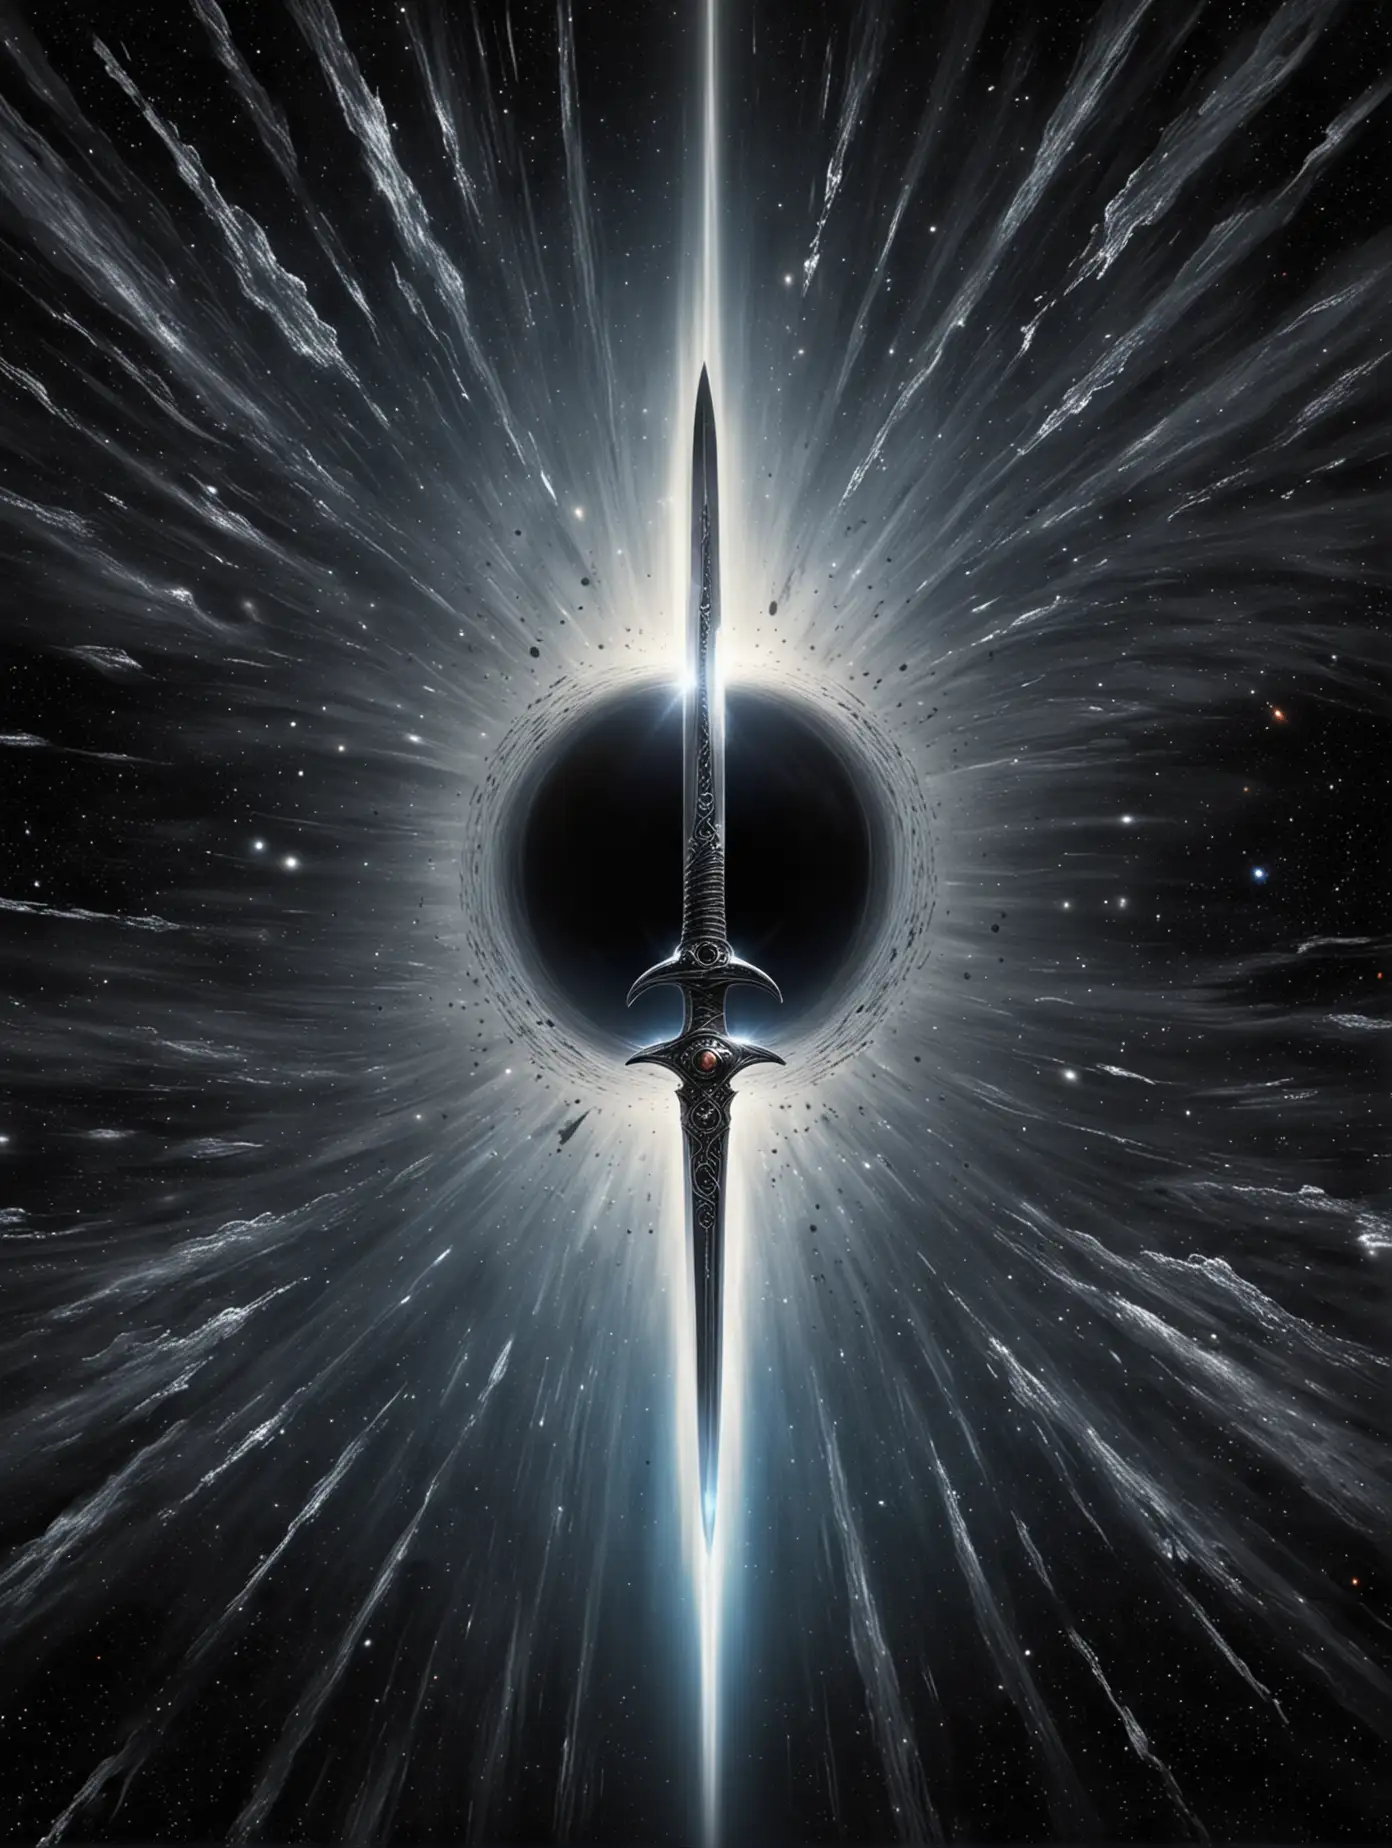  Черная дыра, горизонт событий, космос,, серебряный меч  